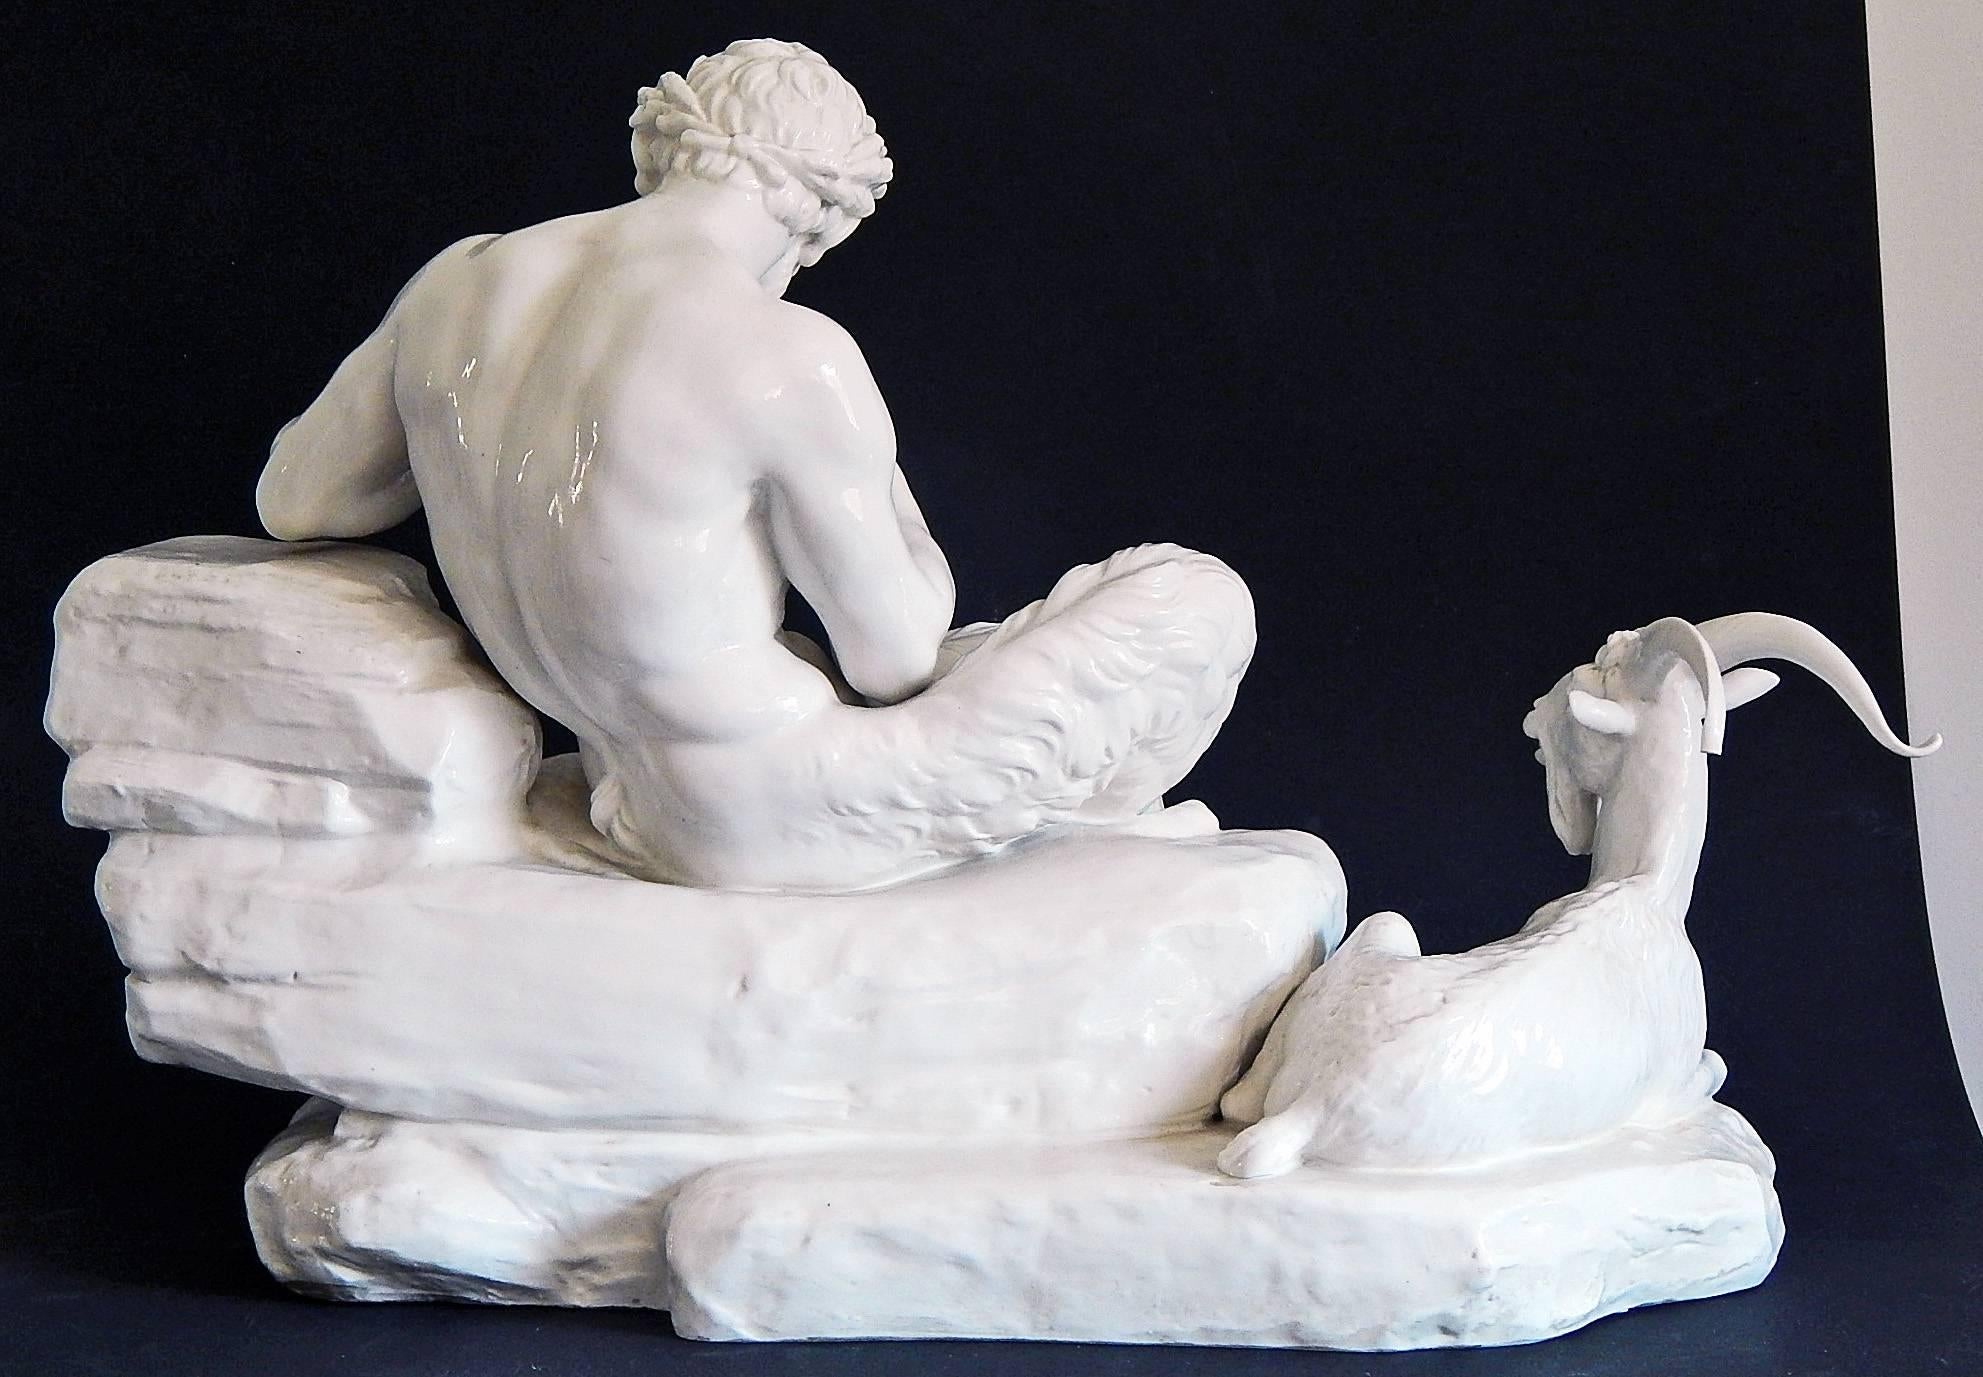 Nach dem Vorbild einer berühmten Skulptur von Peter Simon Lamine aus dem Jahr 1815:: die sich im Nymphenburger Schlosspark in München befindet und etwa ein Jahrhundert später von der berühmten Nymphenburger Porzellanmanufaktur geschaffen wurde::